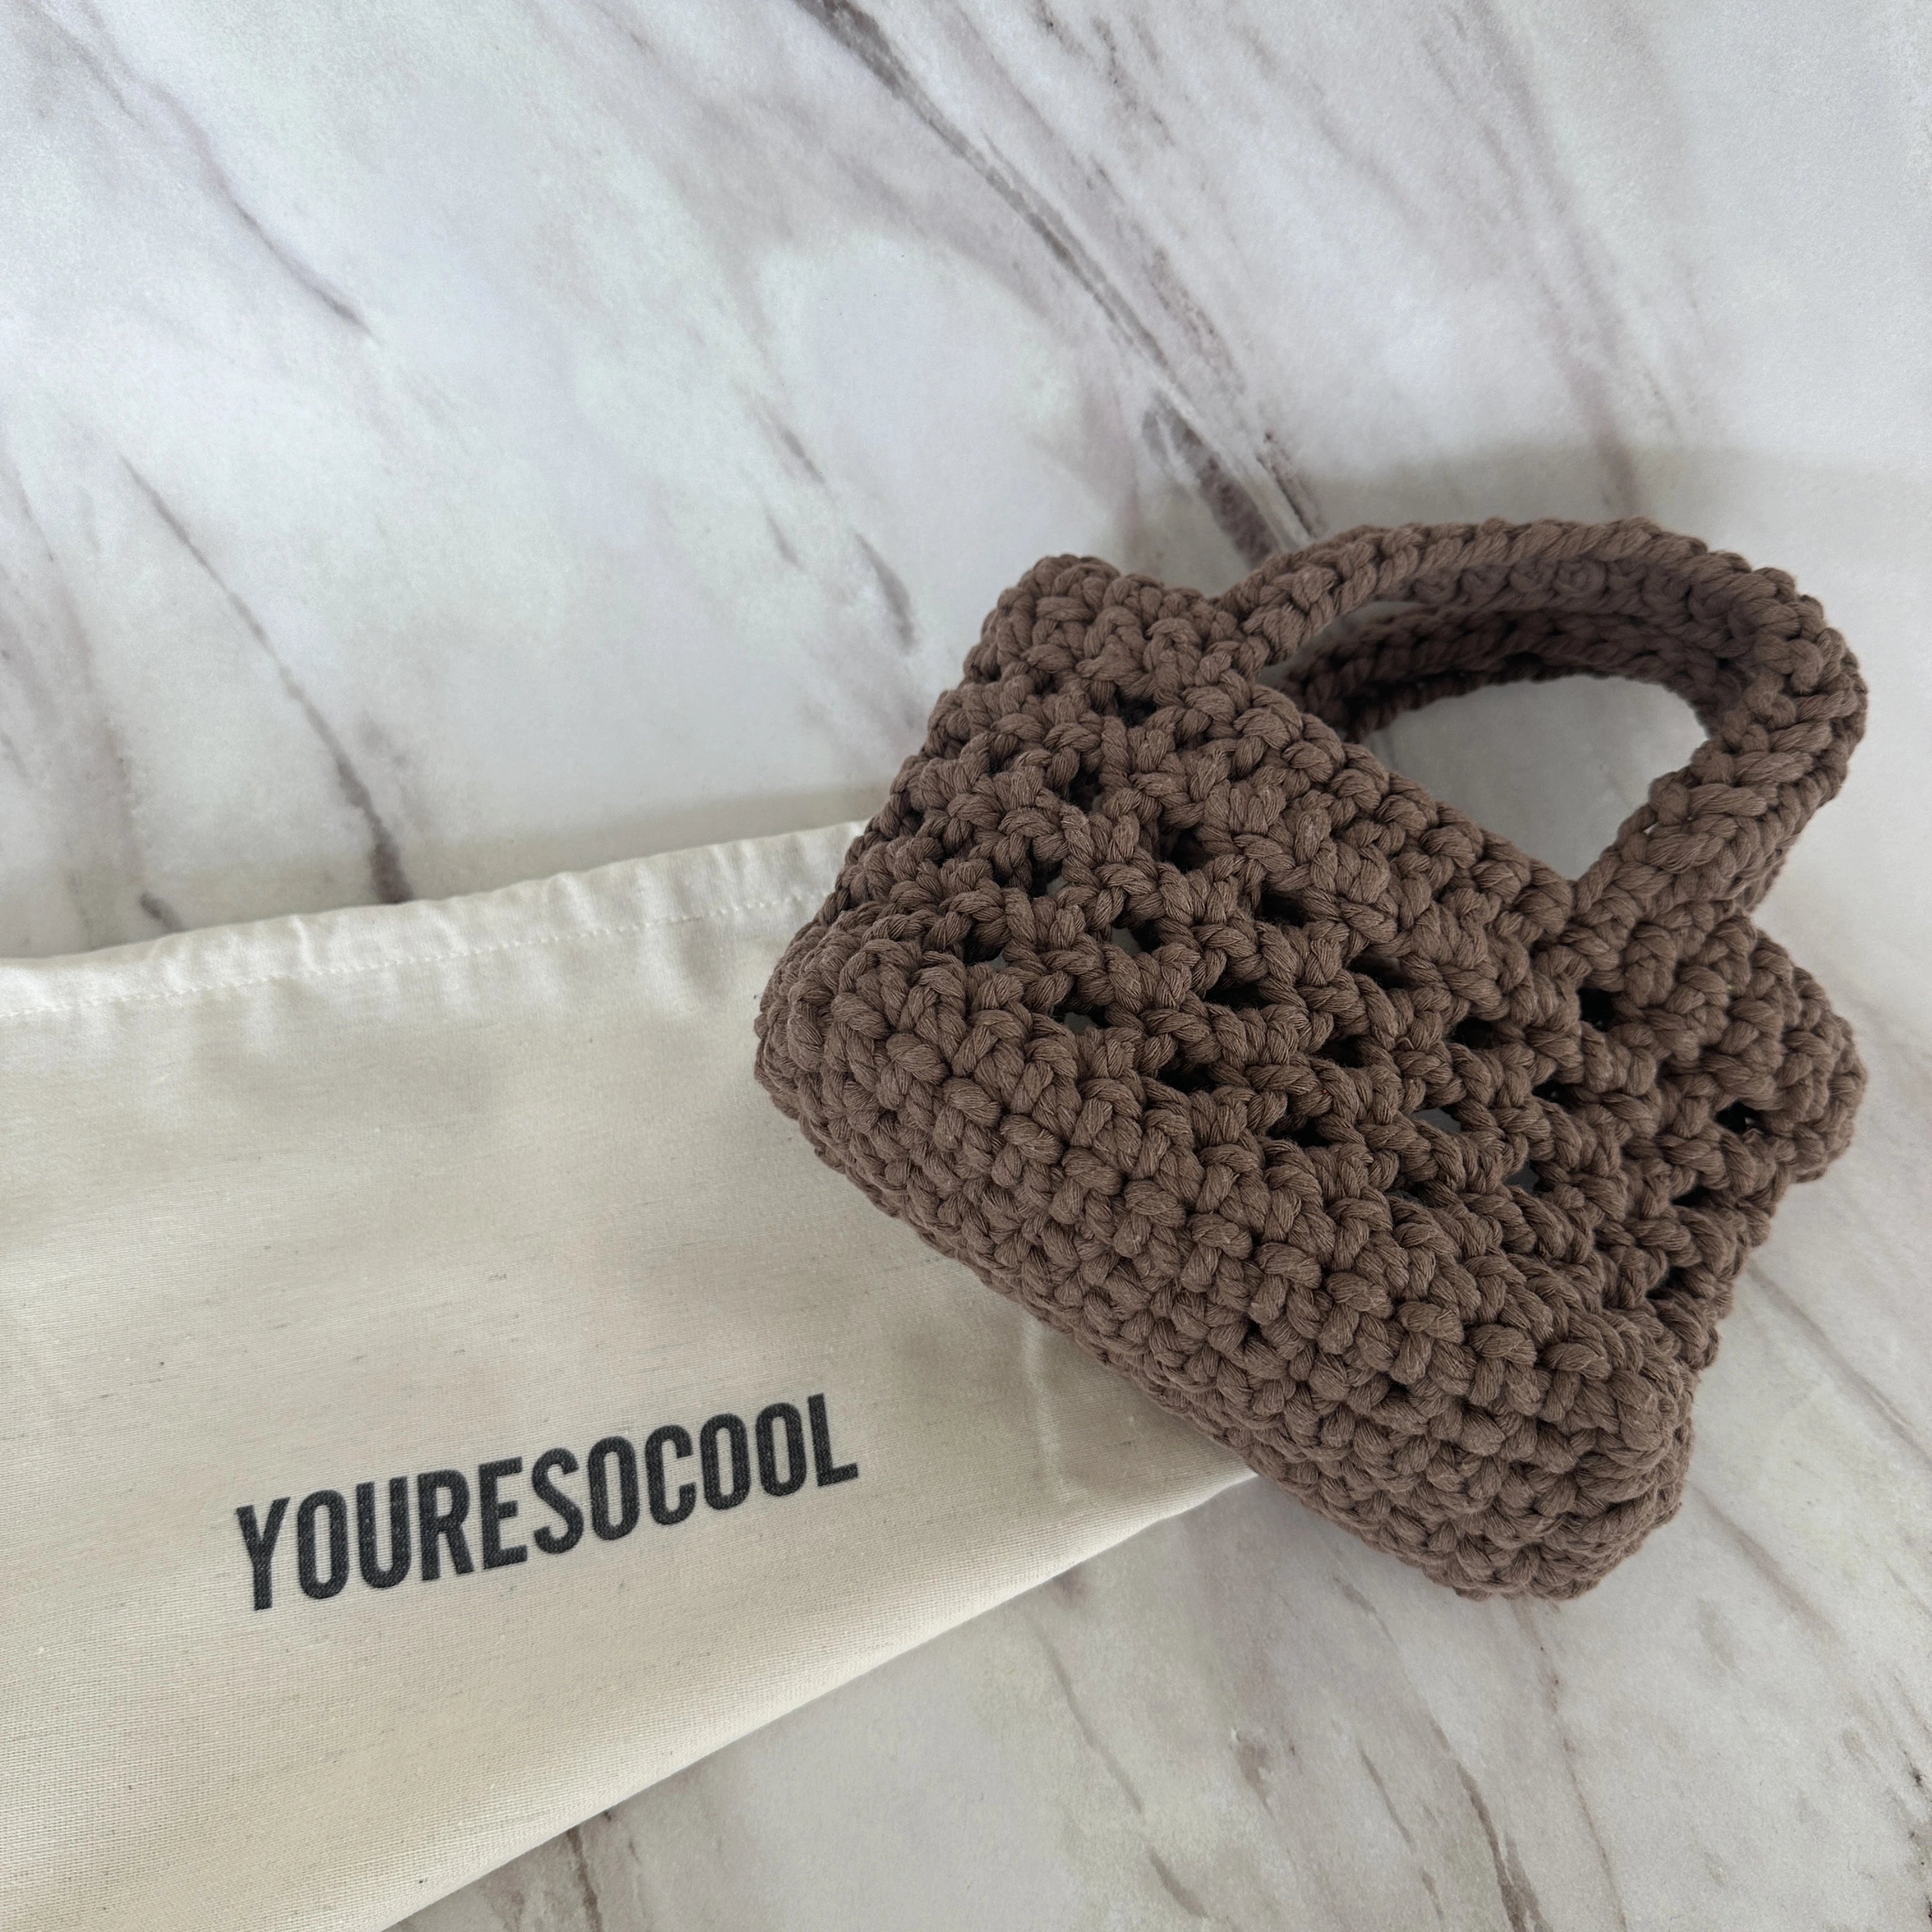 Small Bag YOURESOCOOL - Brown